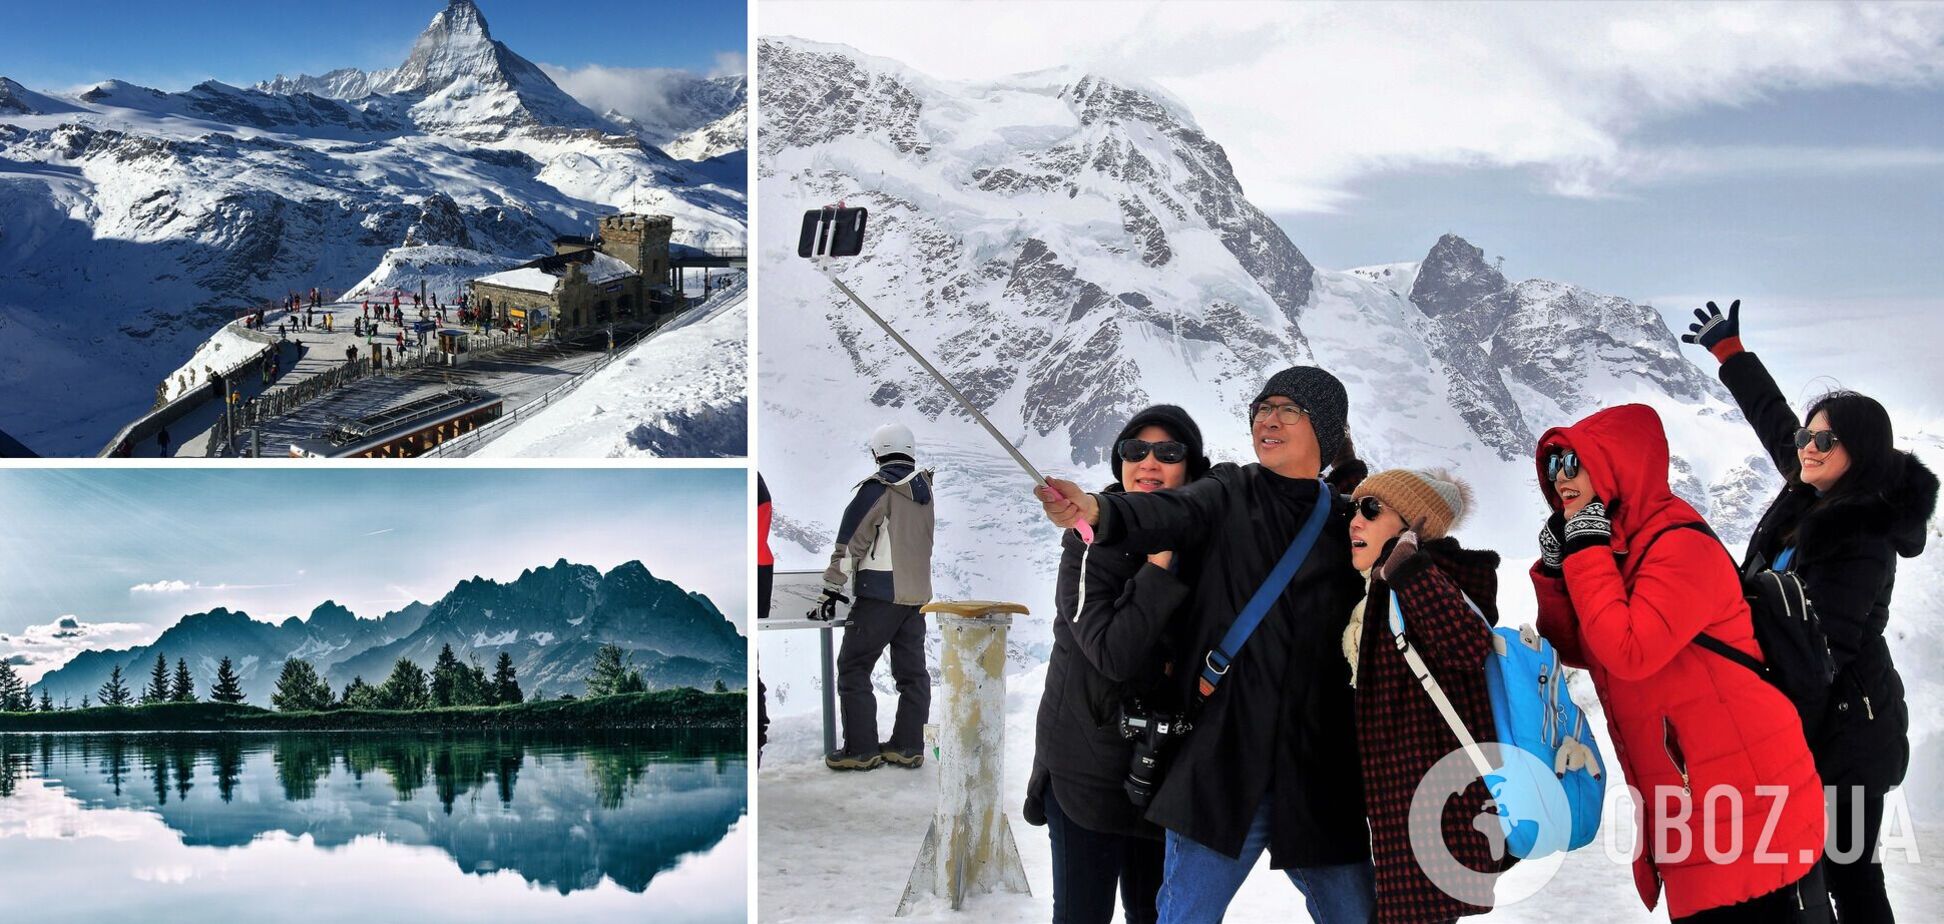 Несмотря на пандемию, в Европе можно провести зимний отпуск в горах